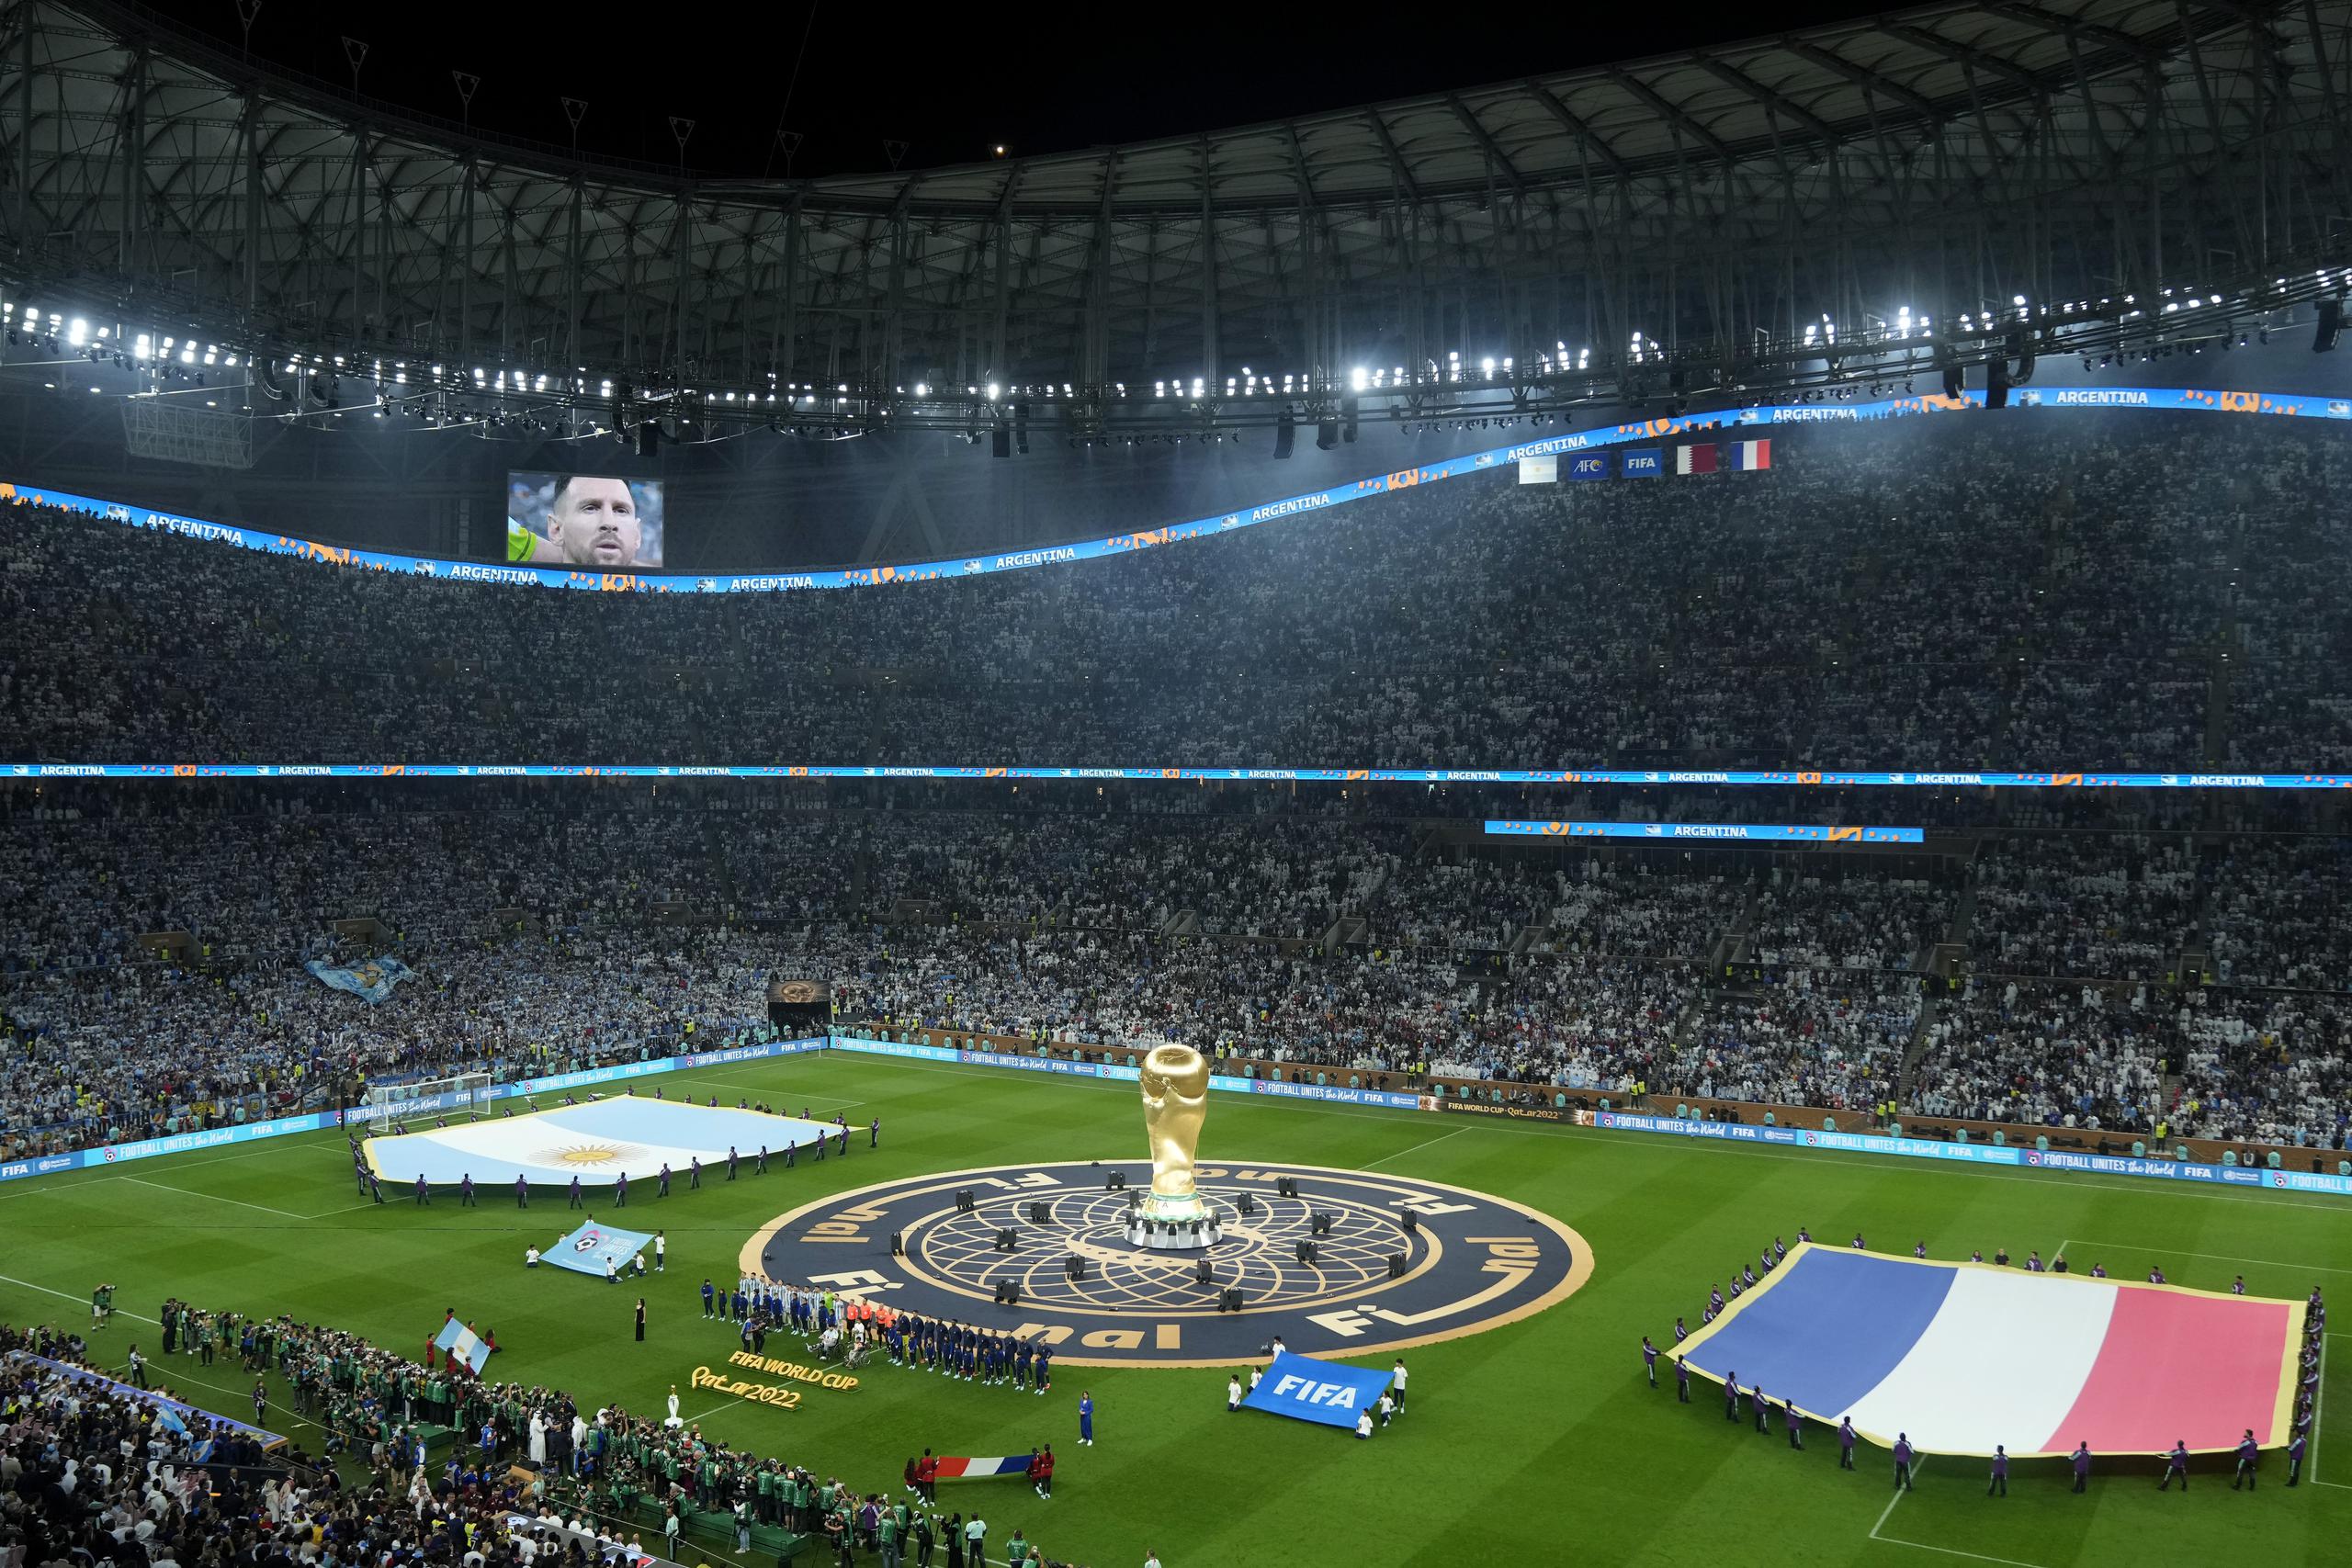 La imagen de Lionel Messi en la pantalla gigante del estadio Lusail previo a la final de la Copa Mundial entre Argentina y Francia, el domingo 18 de diciembre de 2022, en Lusail, Qatar. (AP Foto/Francisco Seco)